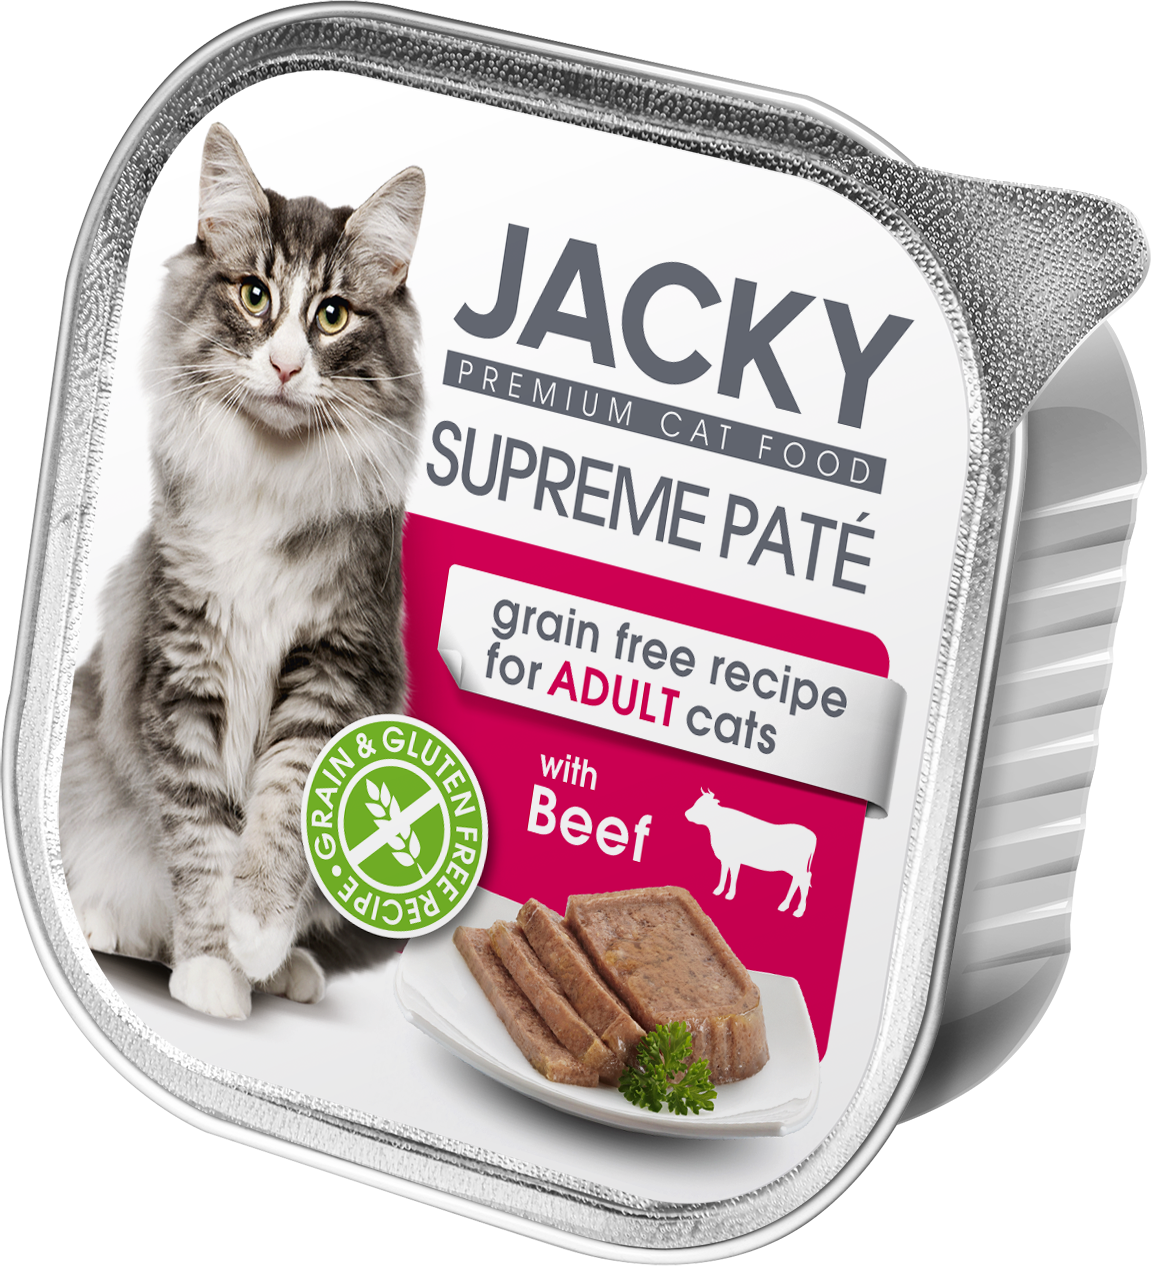 Jacky Supreme Paté pate de bovine 100g, conservă pentru pisici